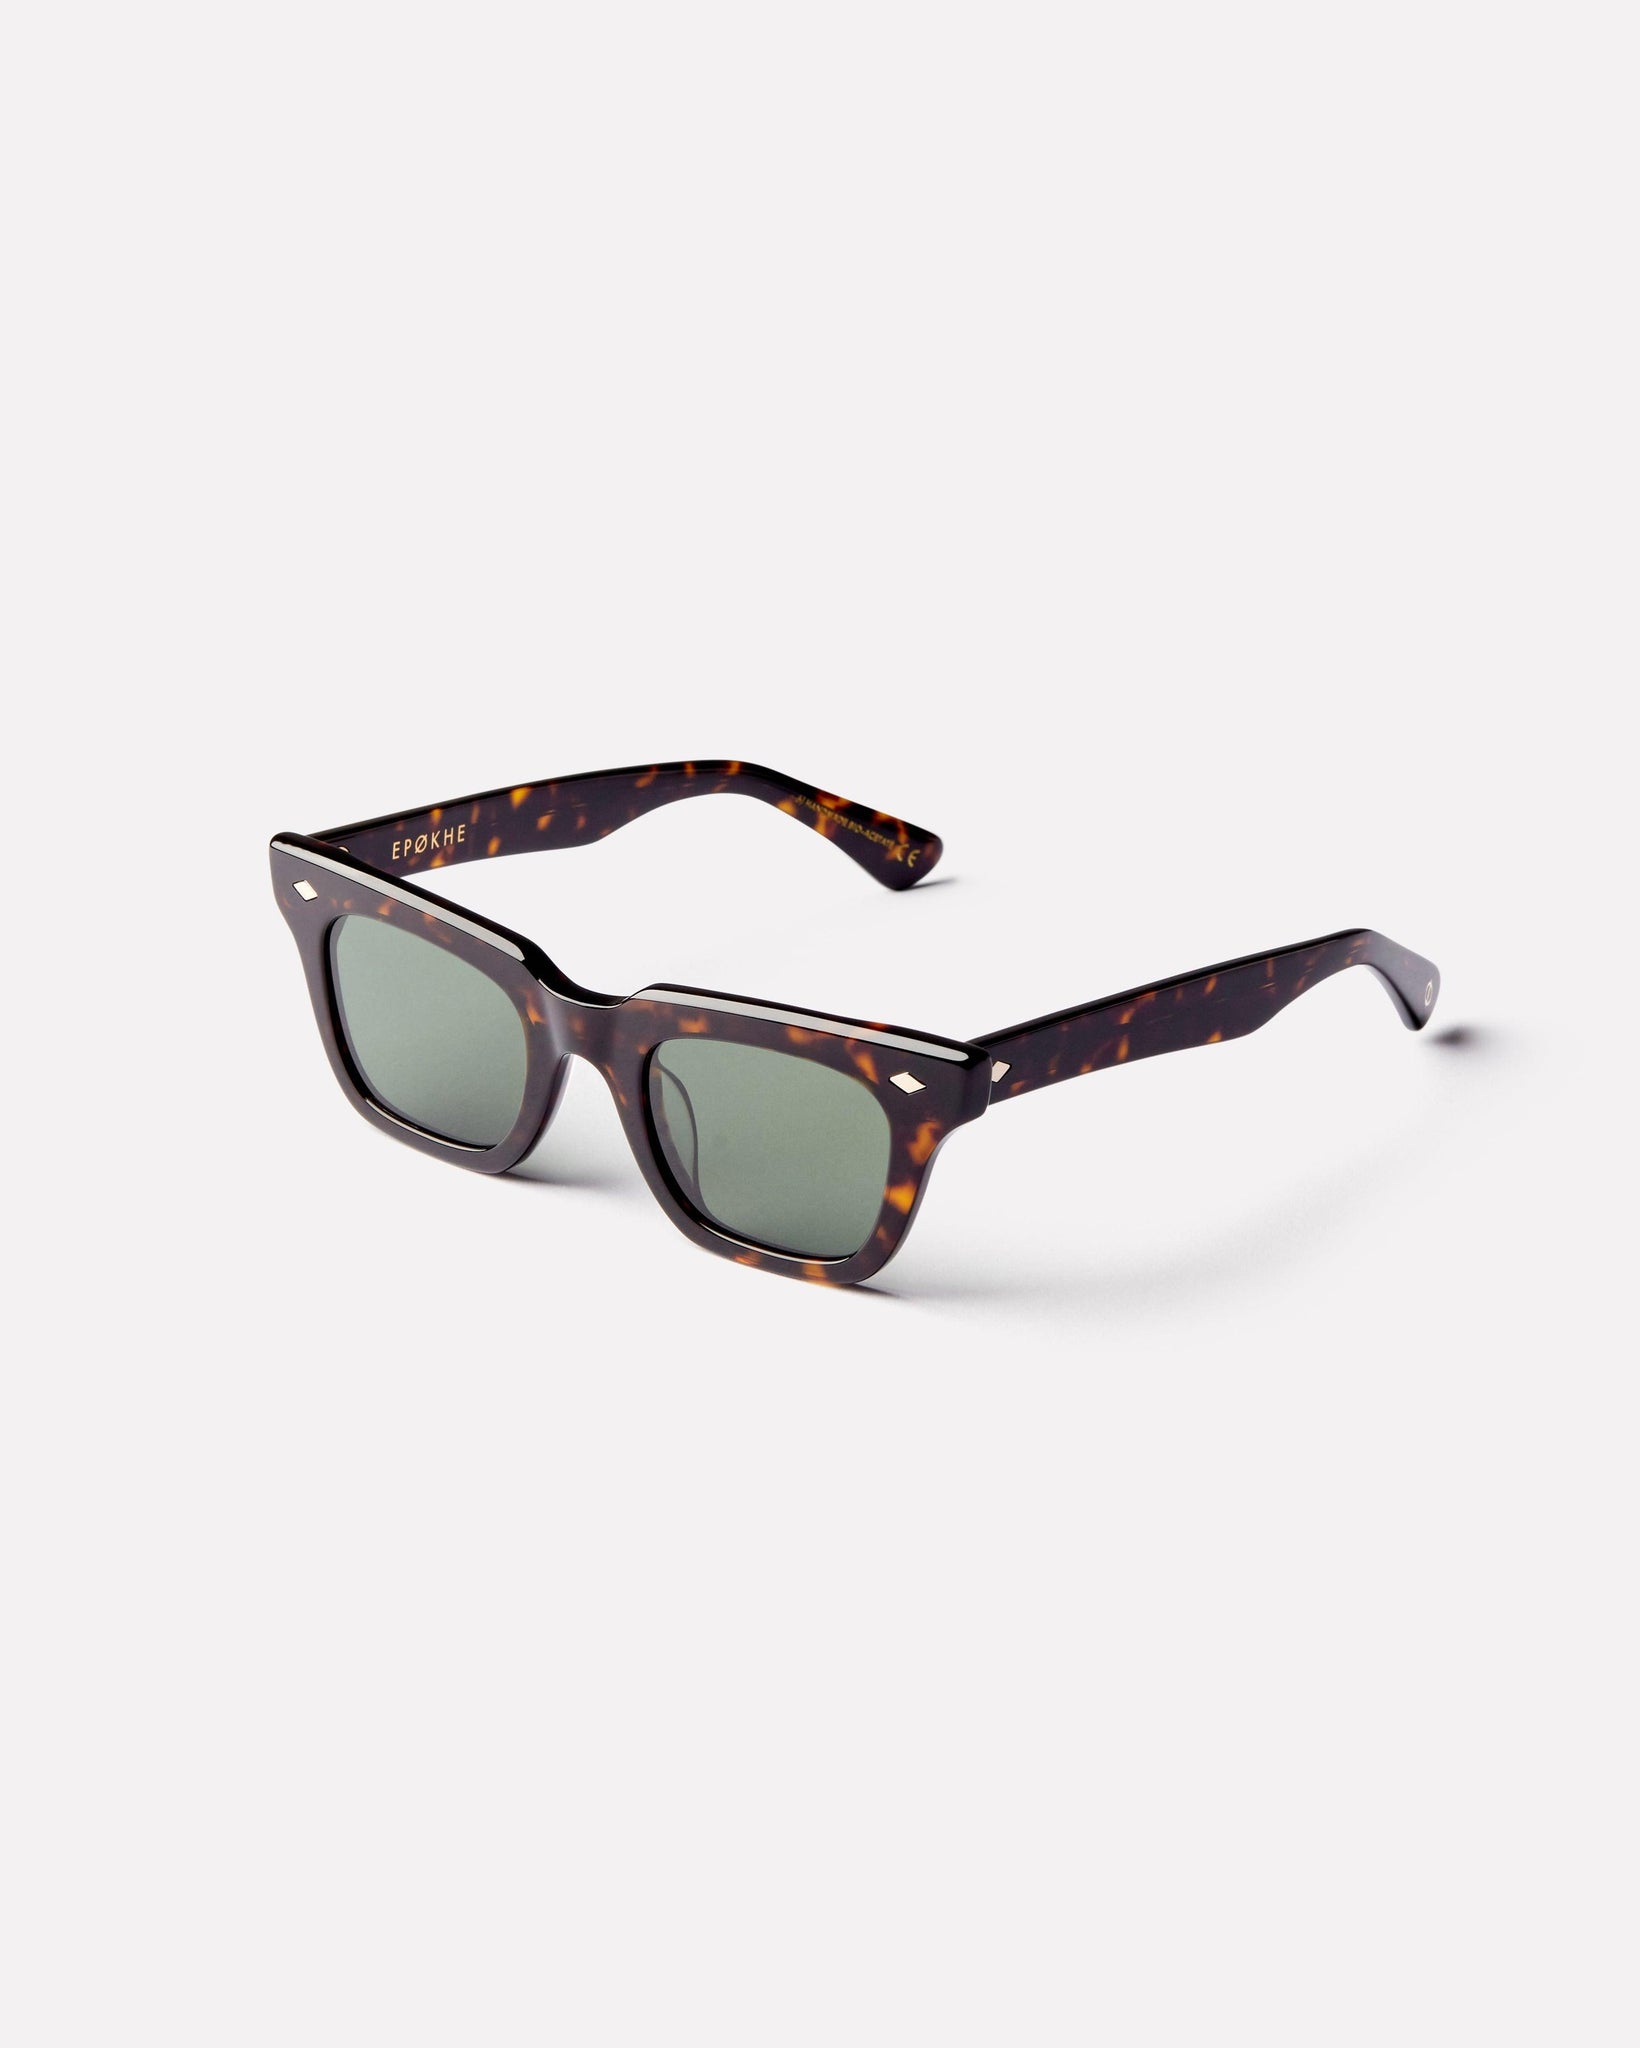 Stereo - Tortoise Polished / Green Polarized - Sunglasses - EPOKHE EYEWEAR